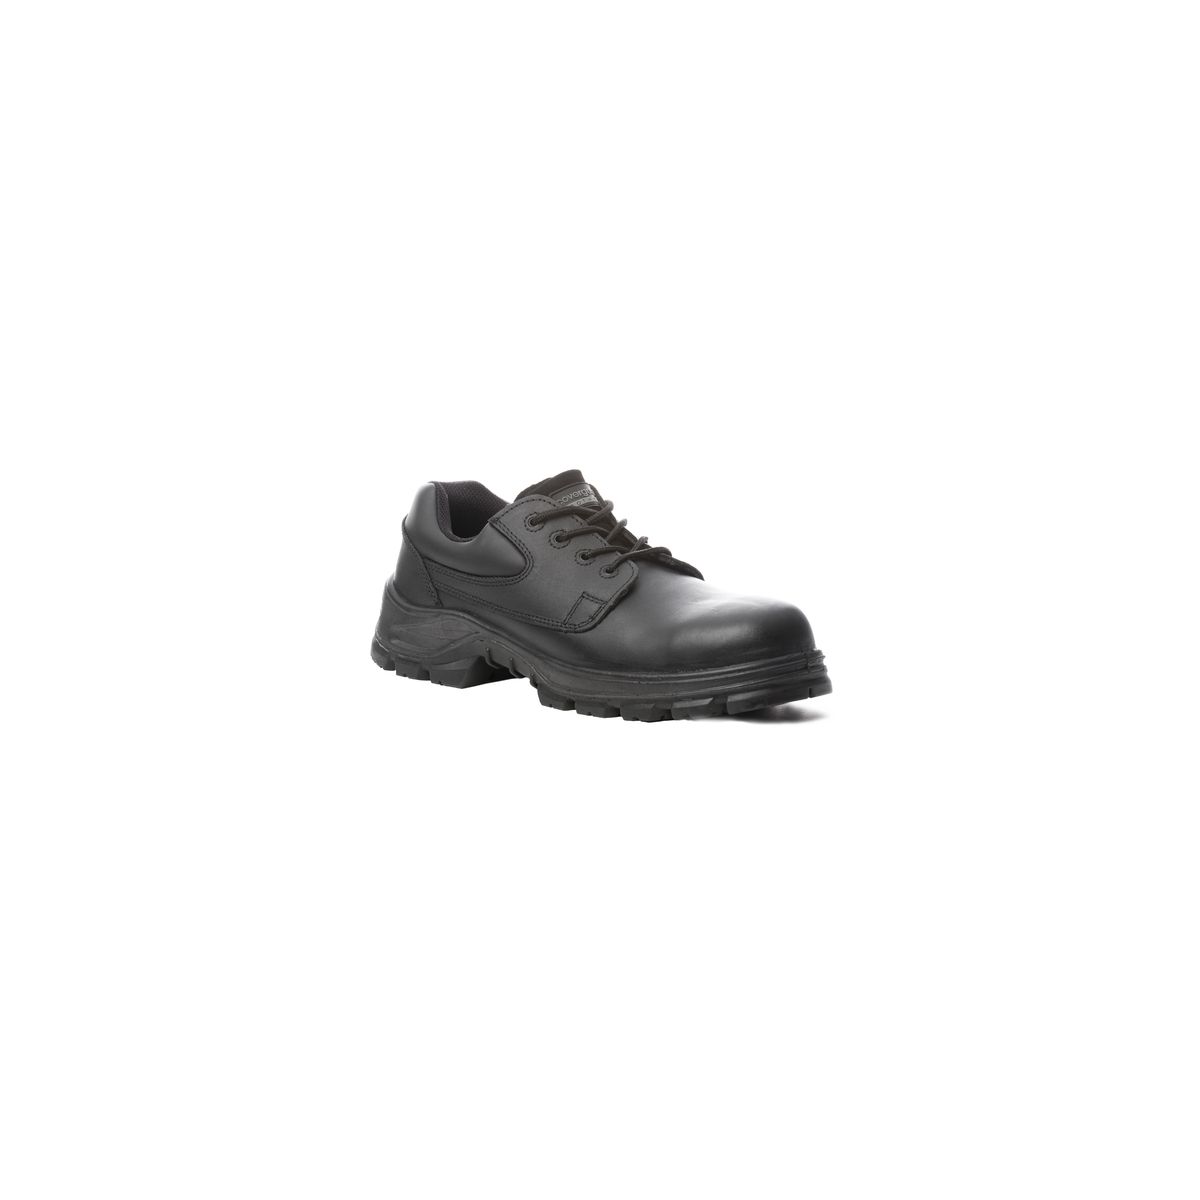 Chaussure de sécurité AVENTURINE S3 basse noir composite - COVERGUARD - Taille 47 0